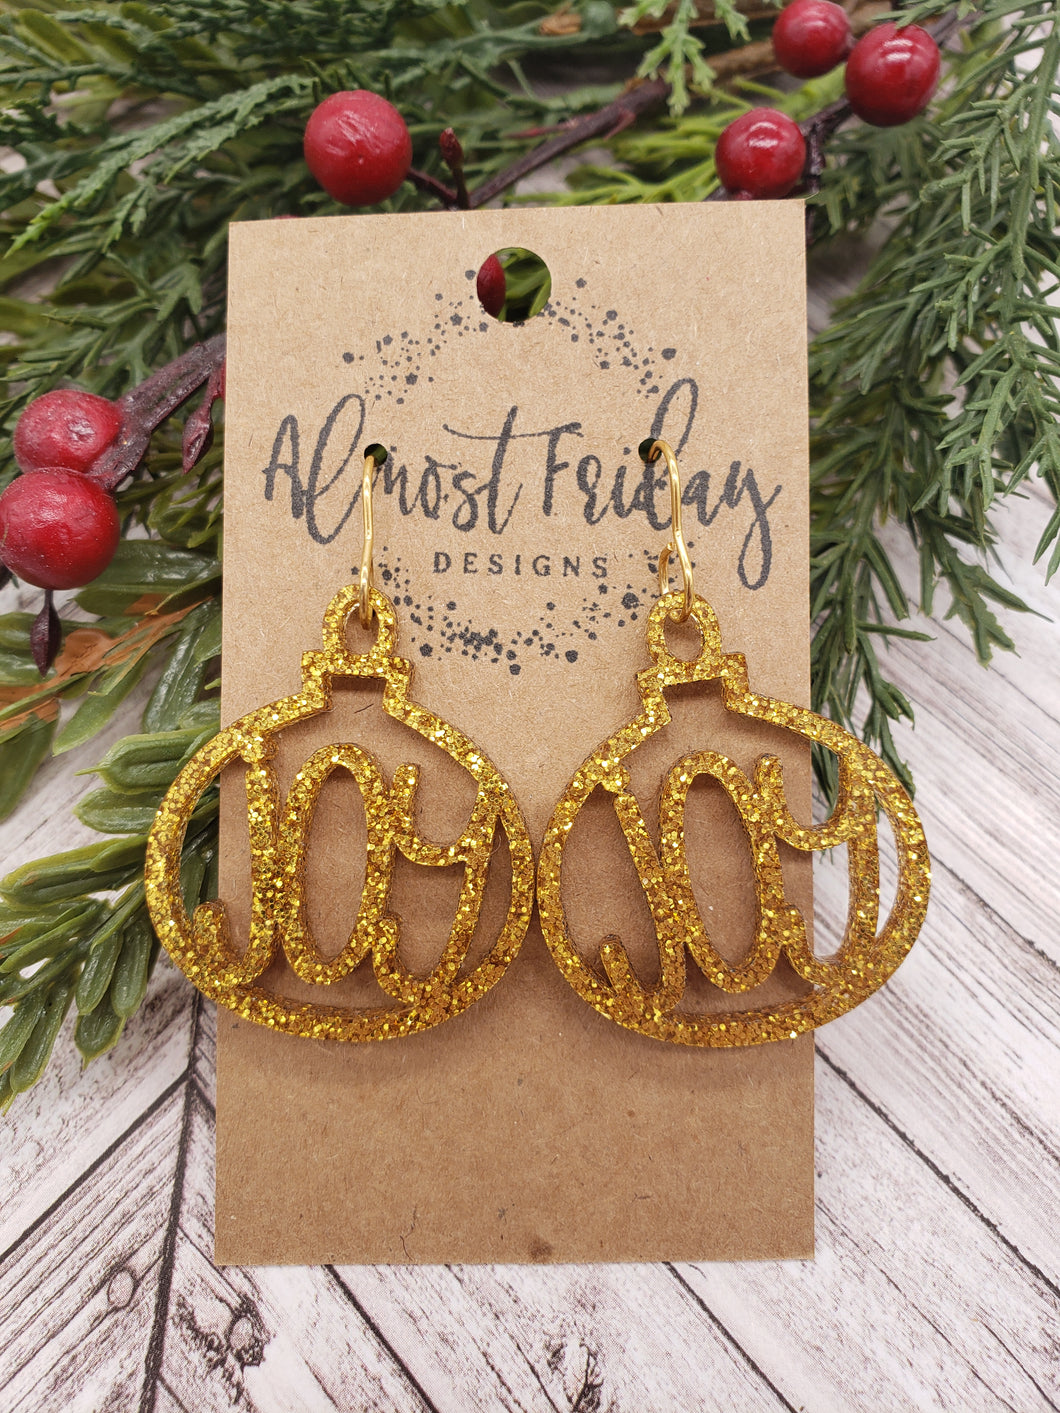 Acrylic Earrings - Christmas Earrings - Ornament - Gold - Glitter - Cut Out Earrings - Joy Earrings - Statement Earrings